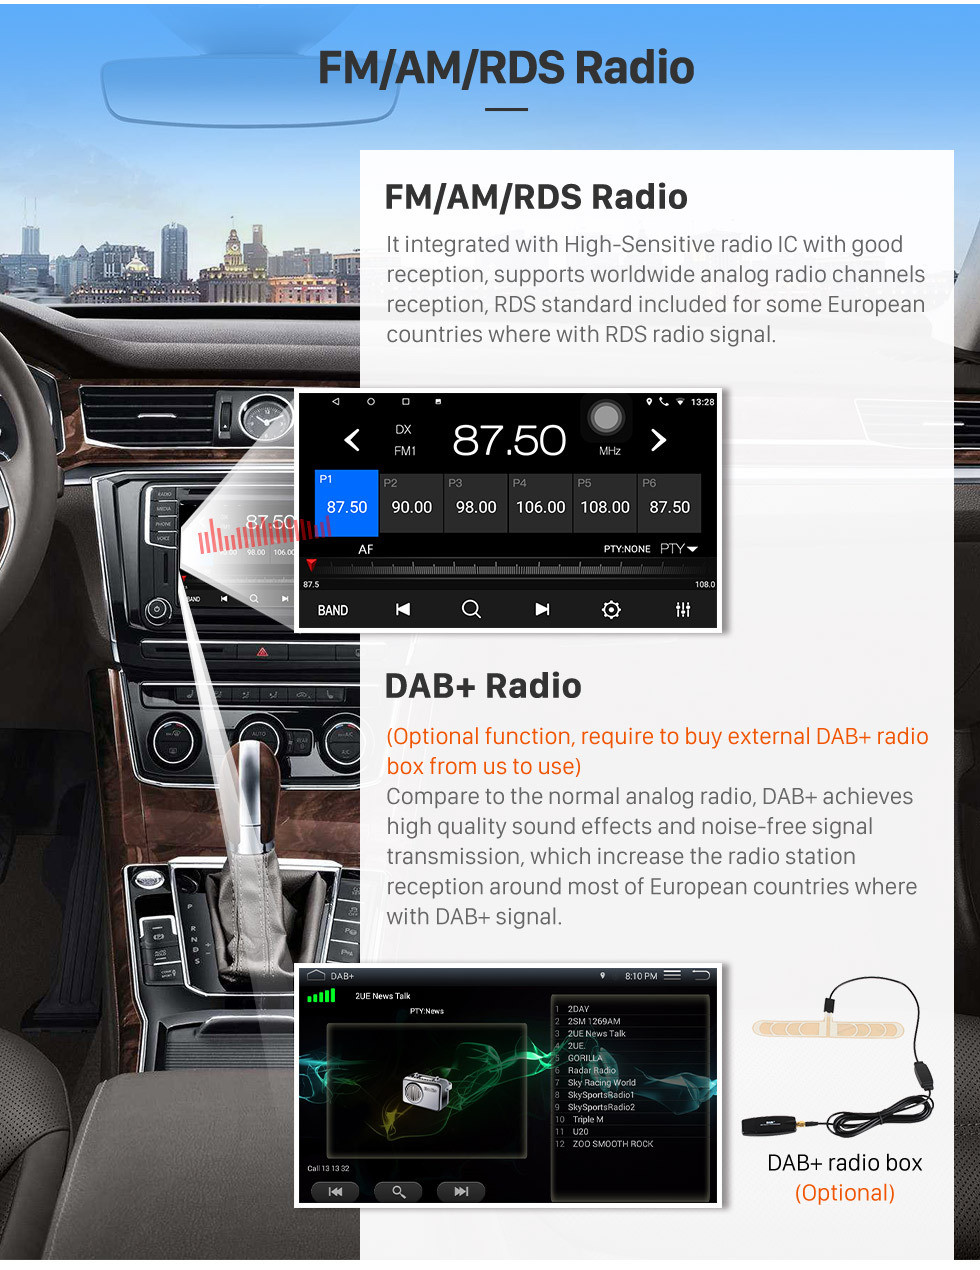 Seicane Android 10.0 9-дюймовый сенсорный GPS-навигатор для VW Volkswagen Passat Polo Golf Skoda с поддержкой Bluetooth USB WIFI Carplay Digital TV